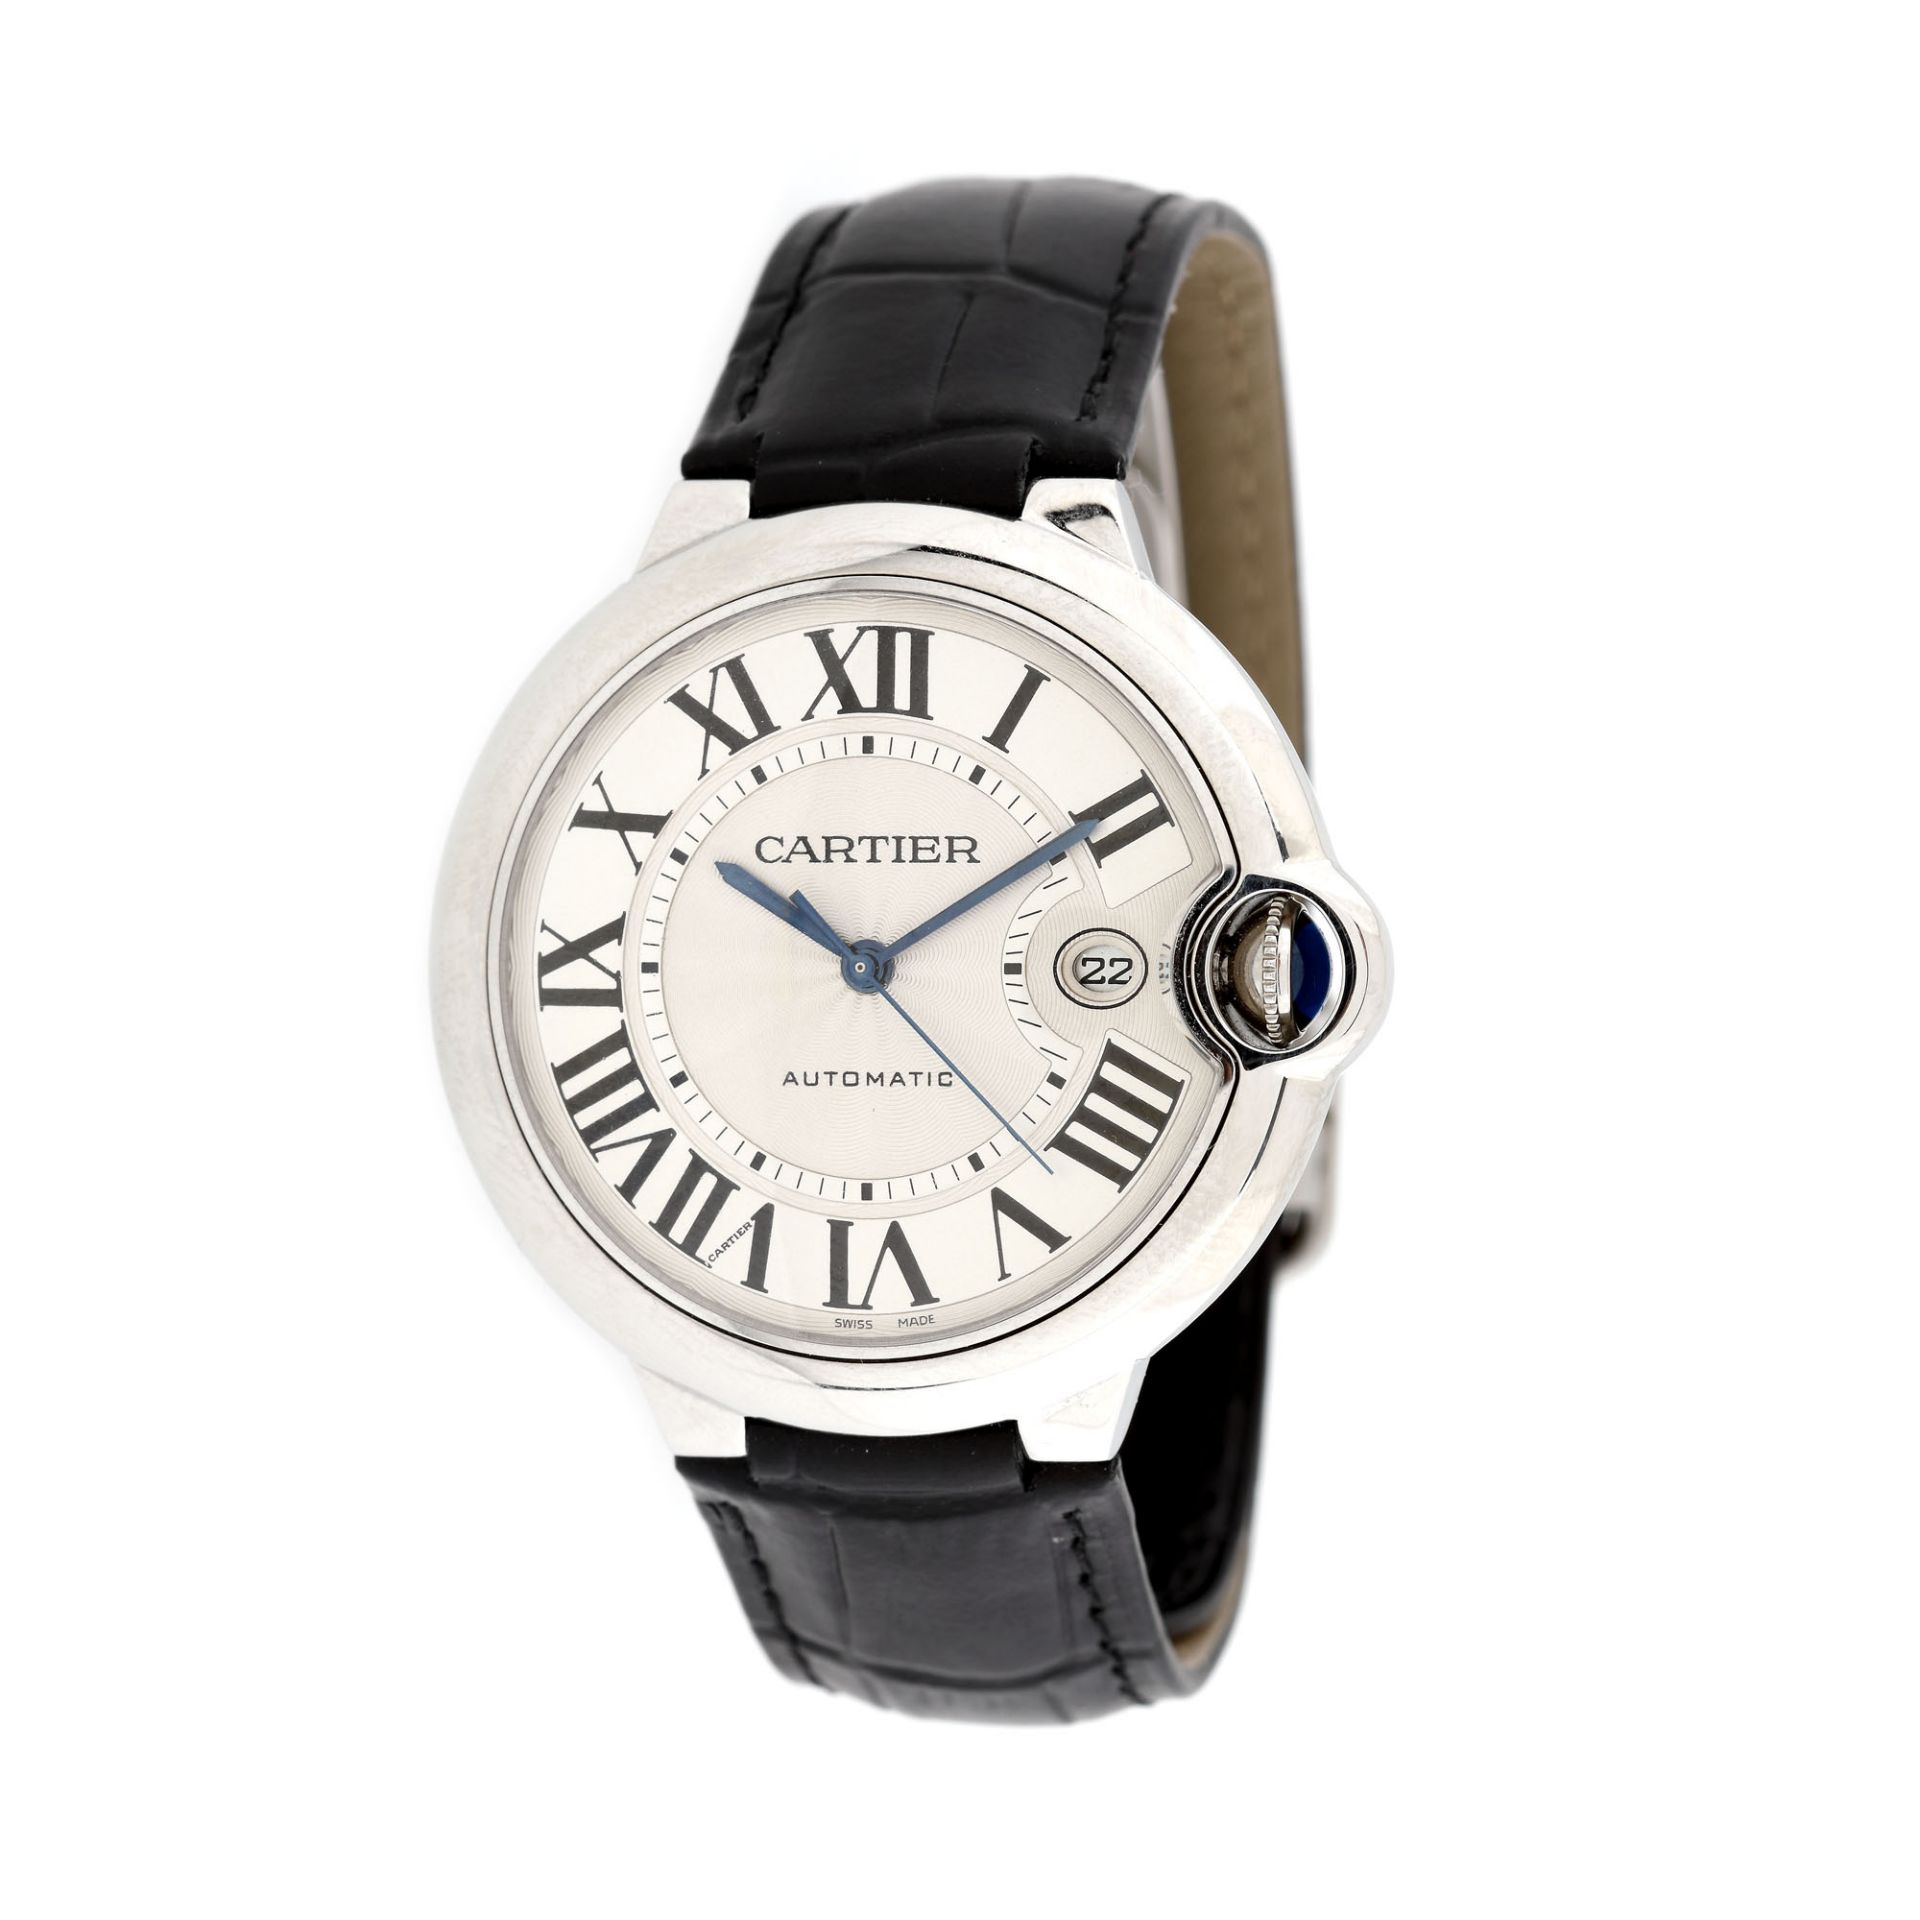 Cartier Ballon Bleu wristwatch, men